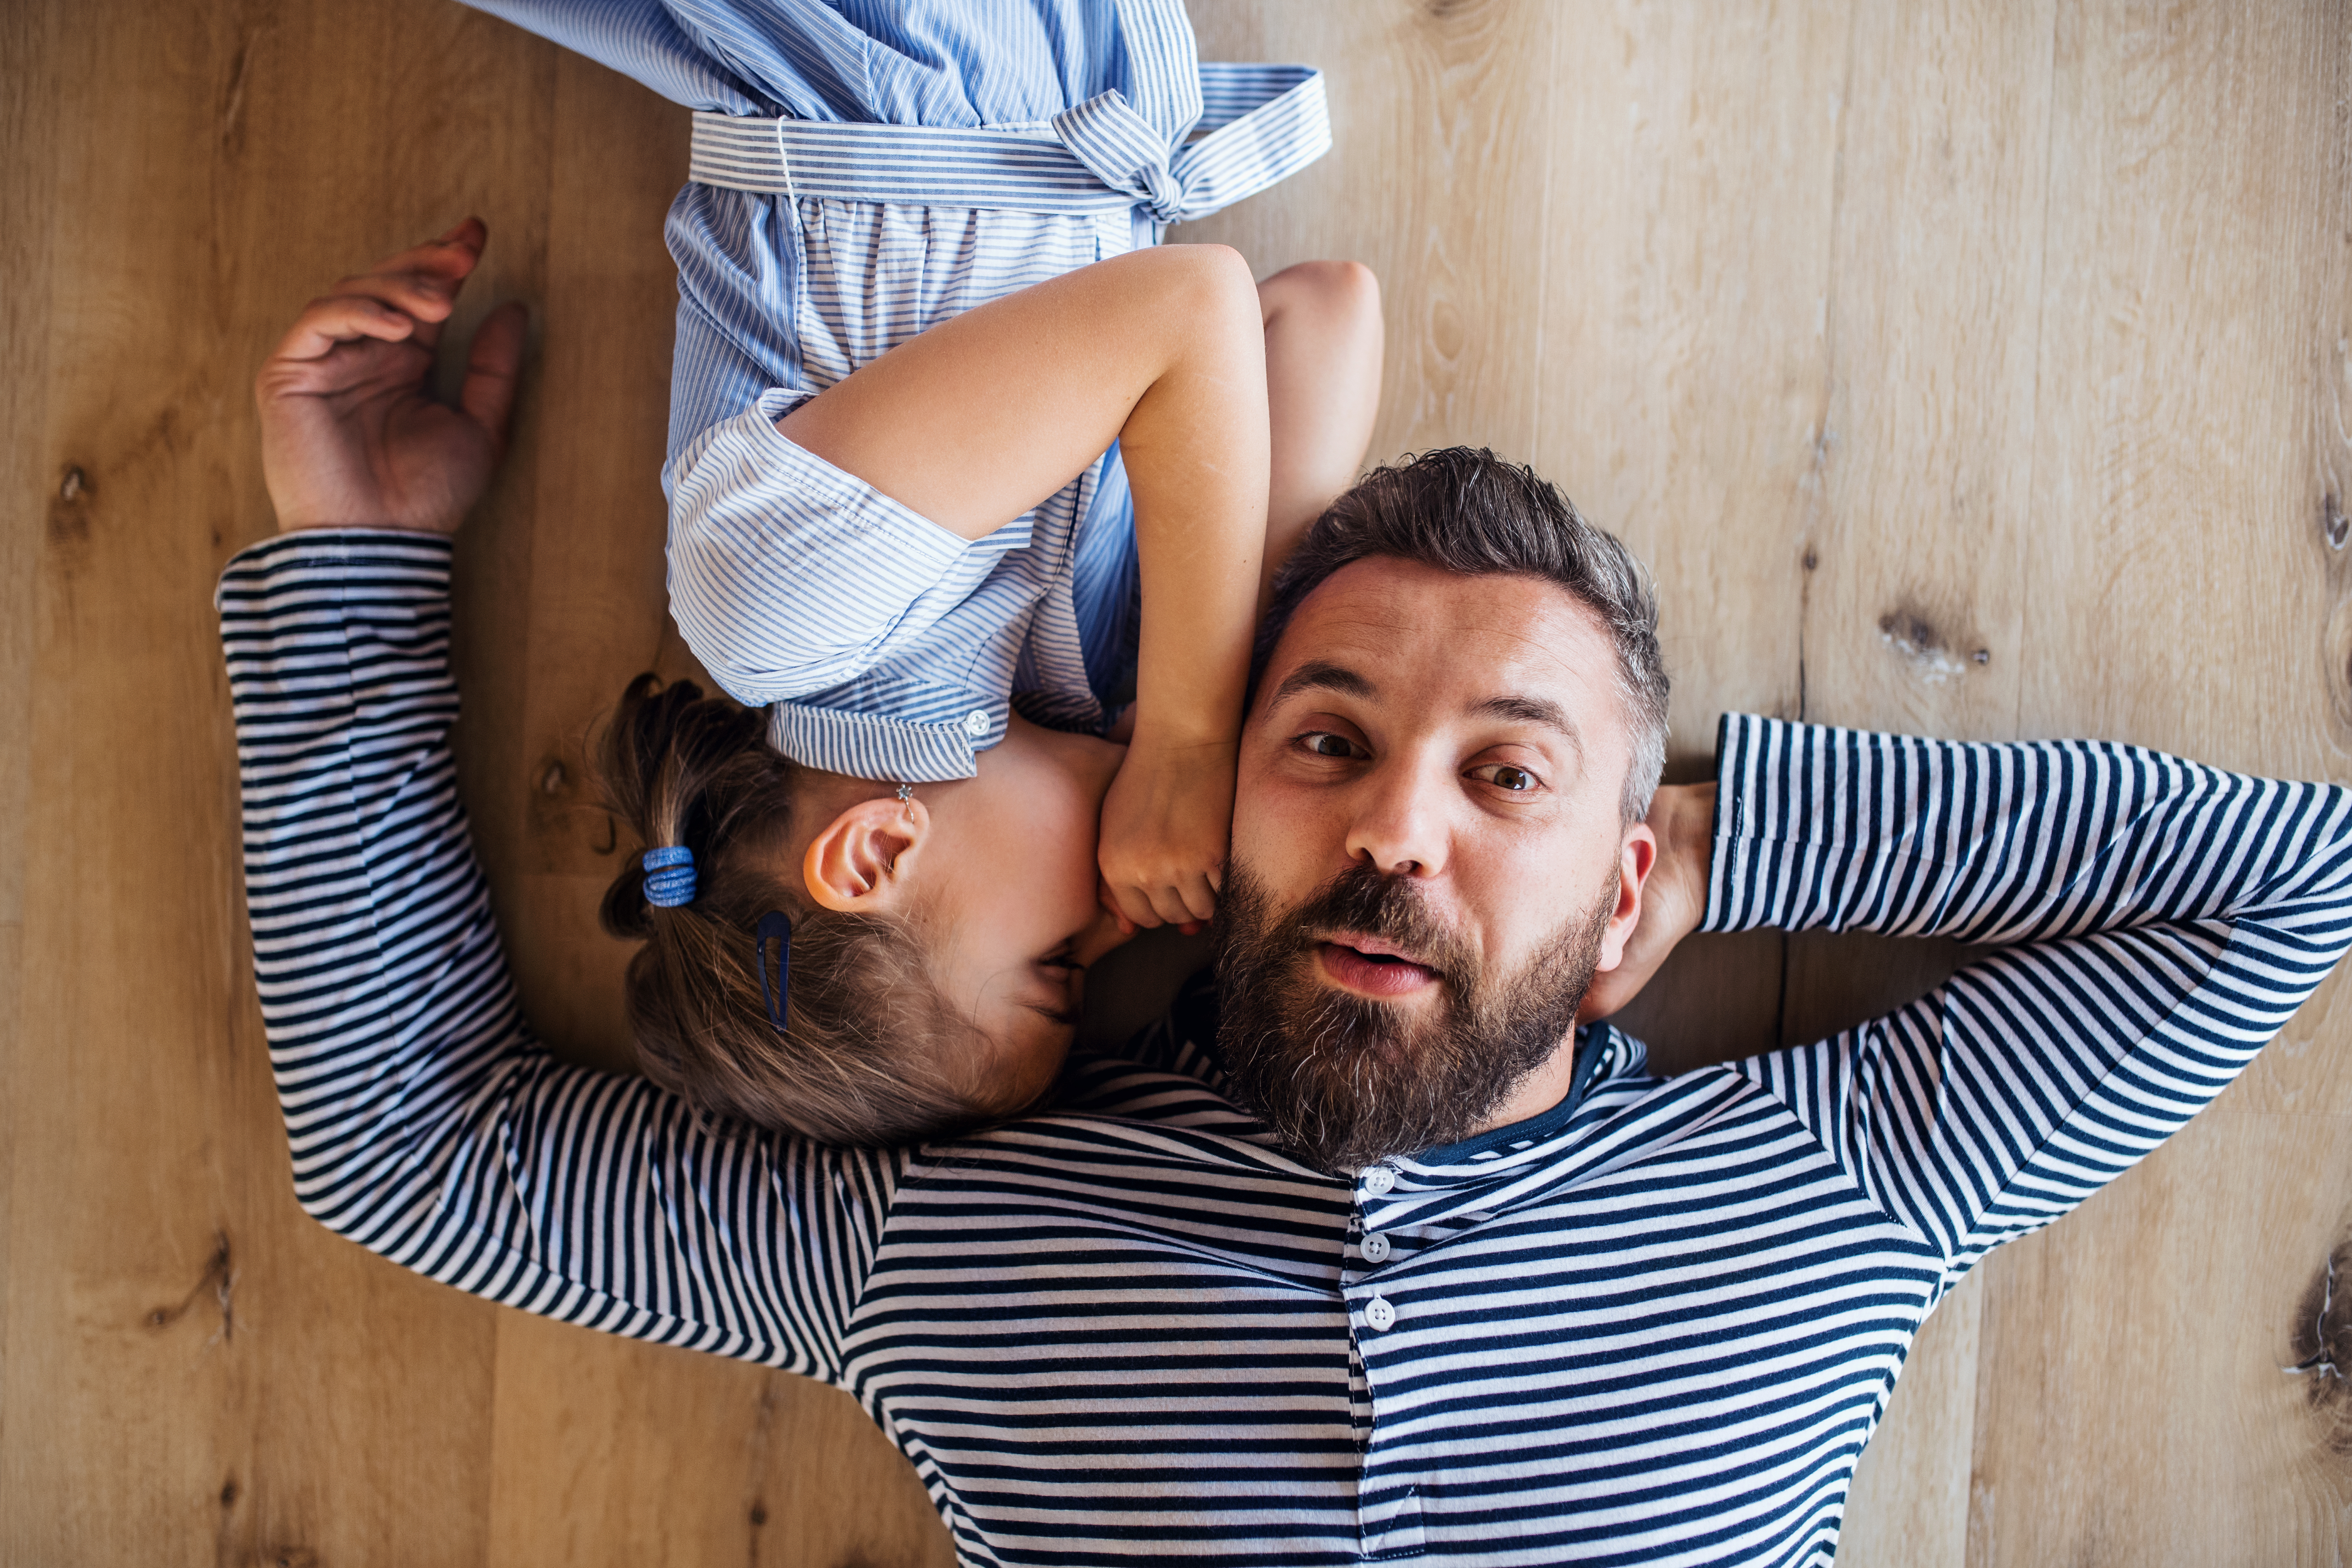 Vue du dessus d'un père d'âge mûr et d'une petite fille allongés sur le sol à l'intérieur de la maison, en train de chuchoter | Source : Getty Images